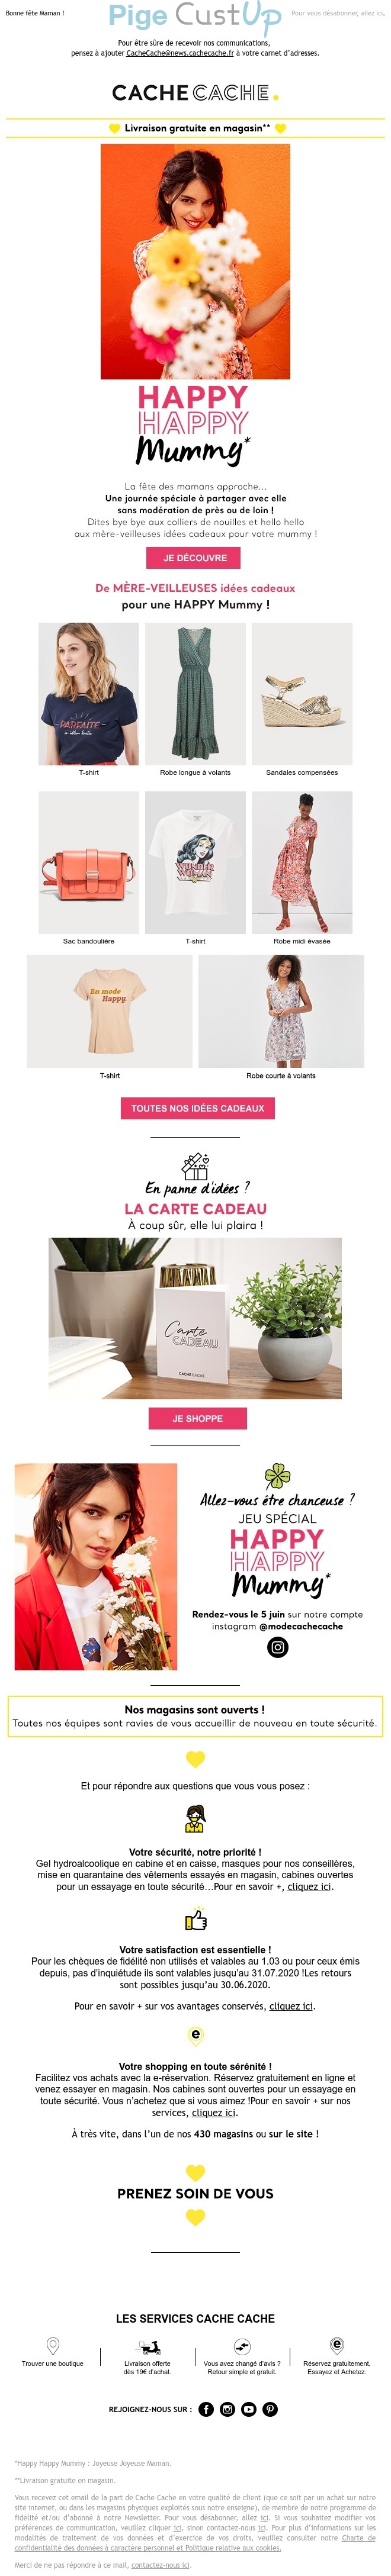 Exemple de Type de media  e-mailing - Cache-Cache - Marketing relationnel - Calendaire (Noël, St valentin, Vœux, …)